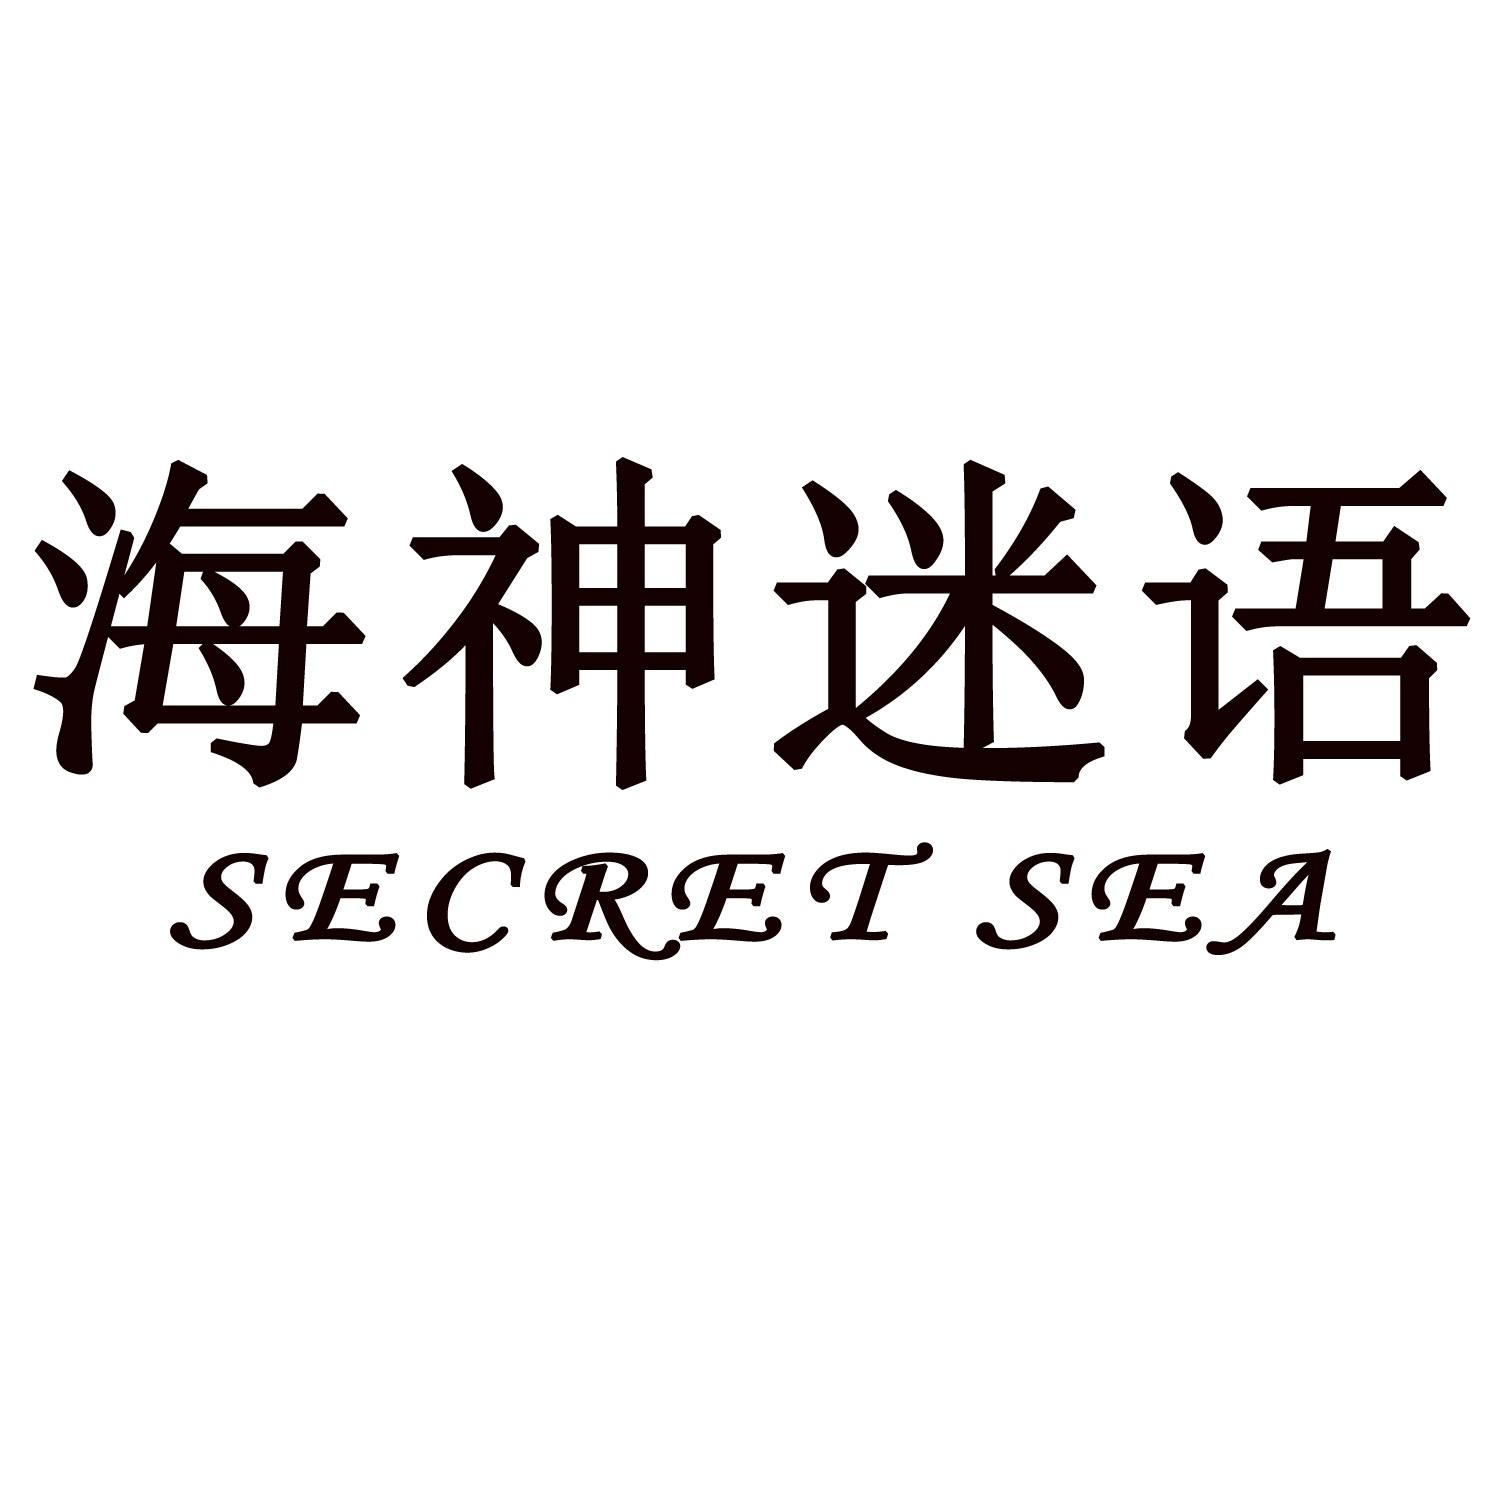 海神迷语 SECRET SEA